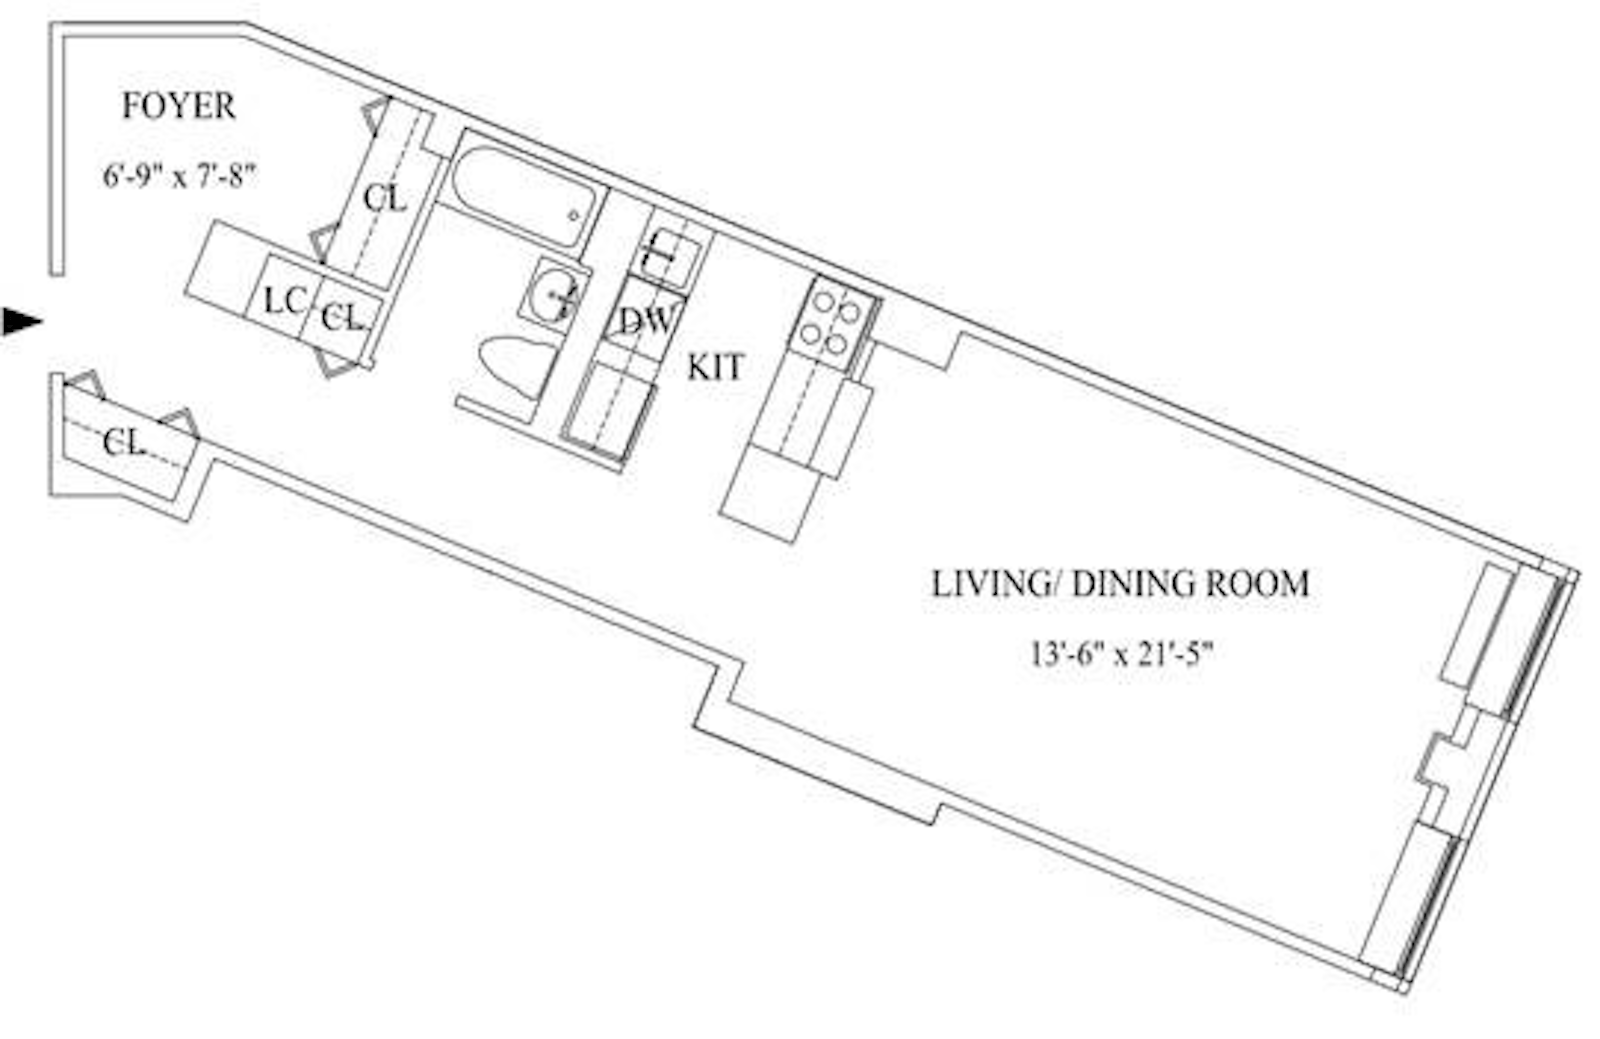 Floorplan for 99 John Street, 1016